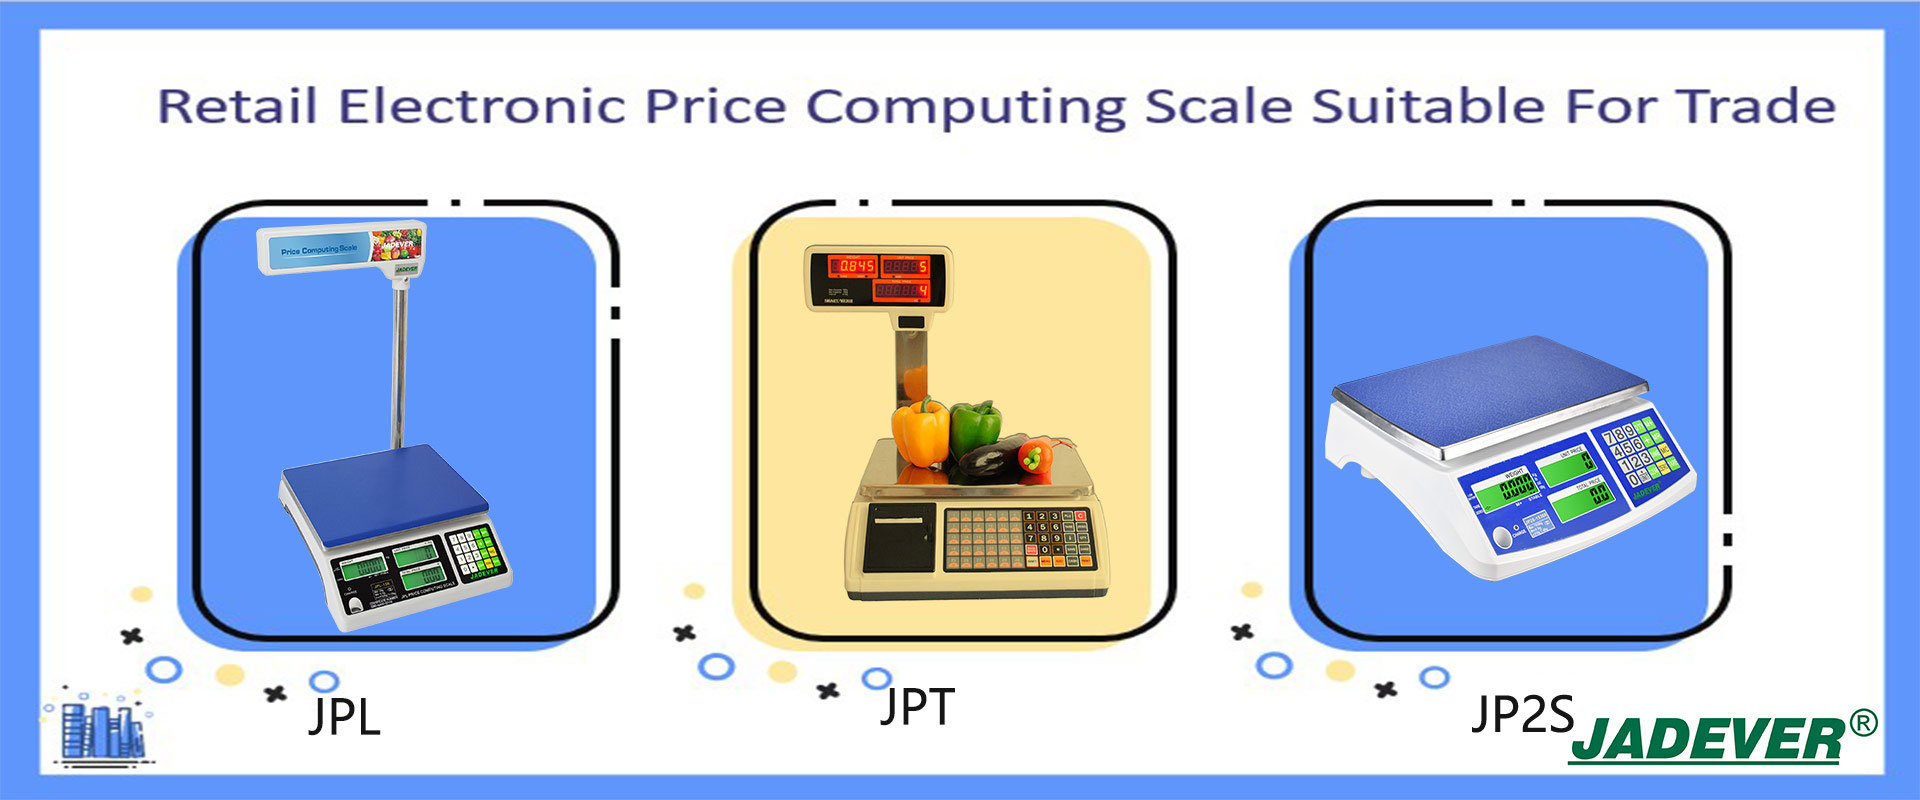 Báscula de cálculo de precios electrónicos minoristas adecuada para el comercio
